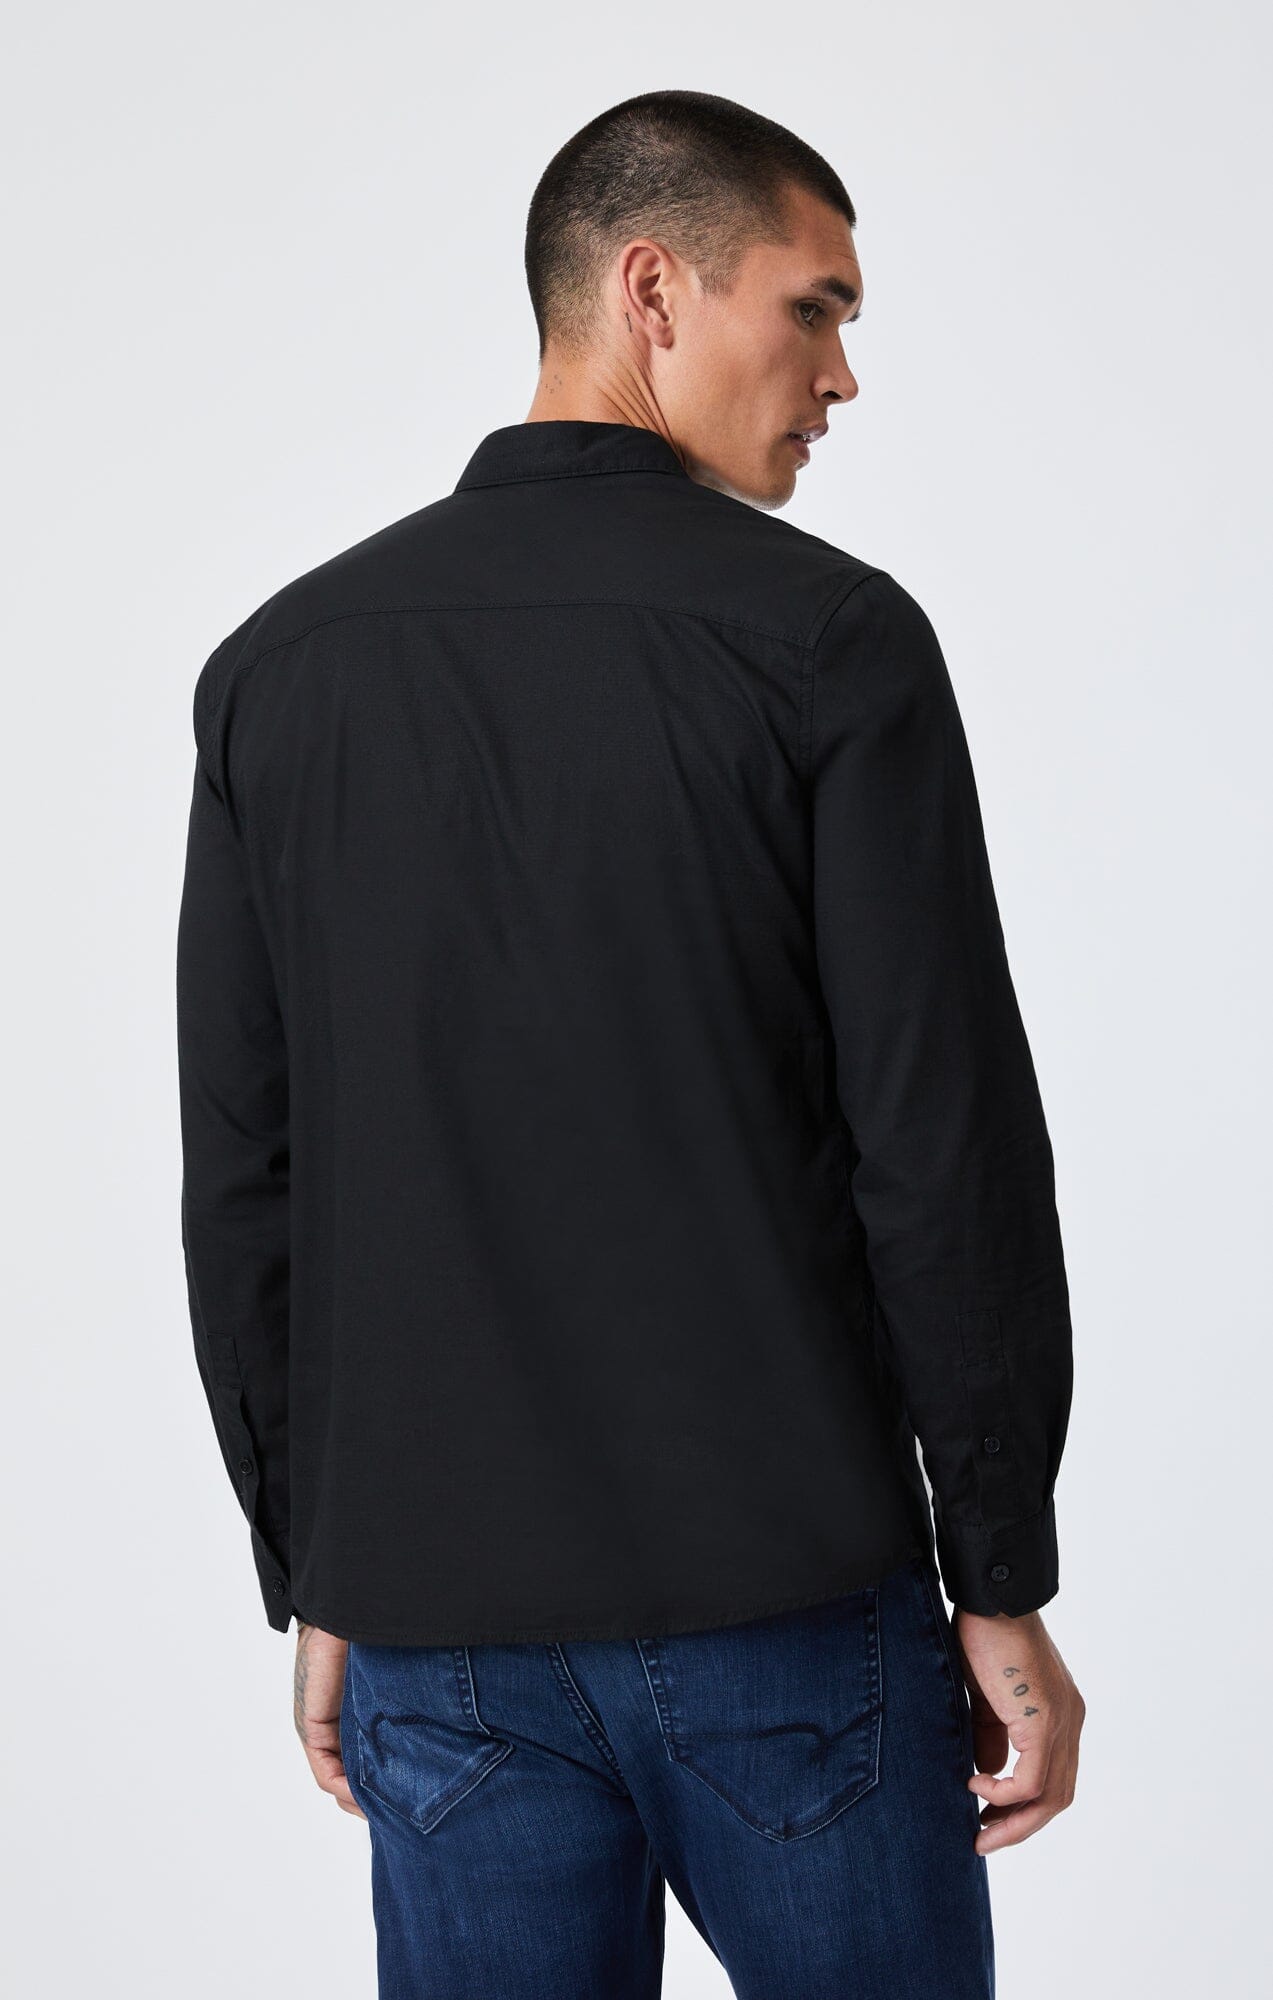 Y#39;s For Men Black Button Shirt